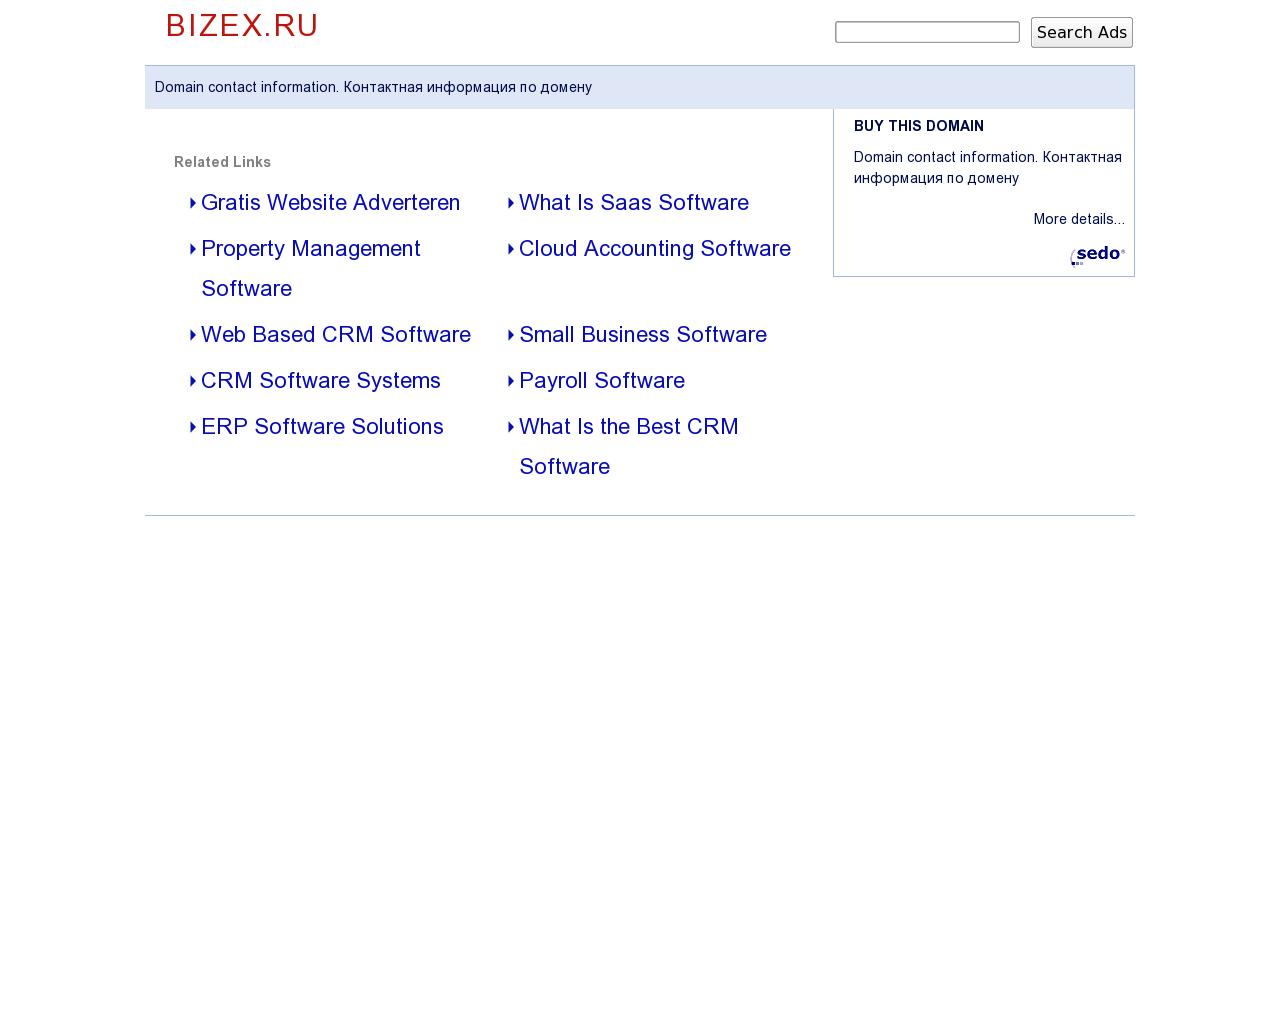 Изображение сайта bizex.ru в разрешении 1280x1024